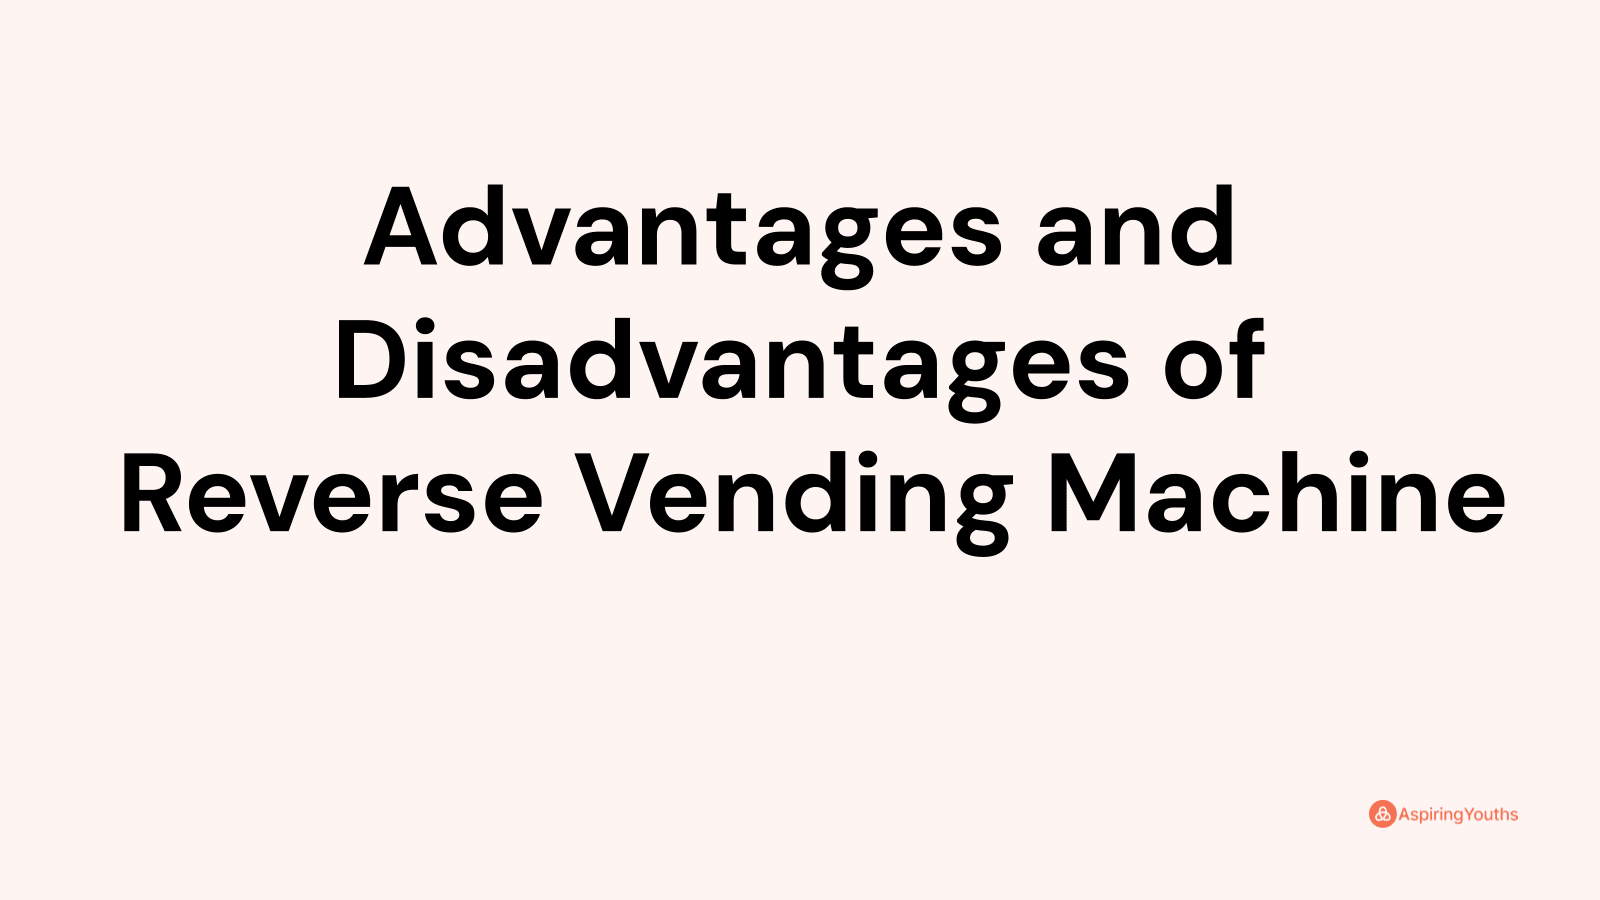 Advantages and disadvantages of Reverse Vending Machine